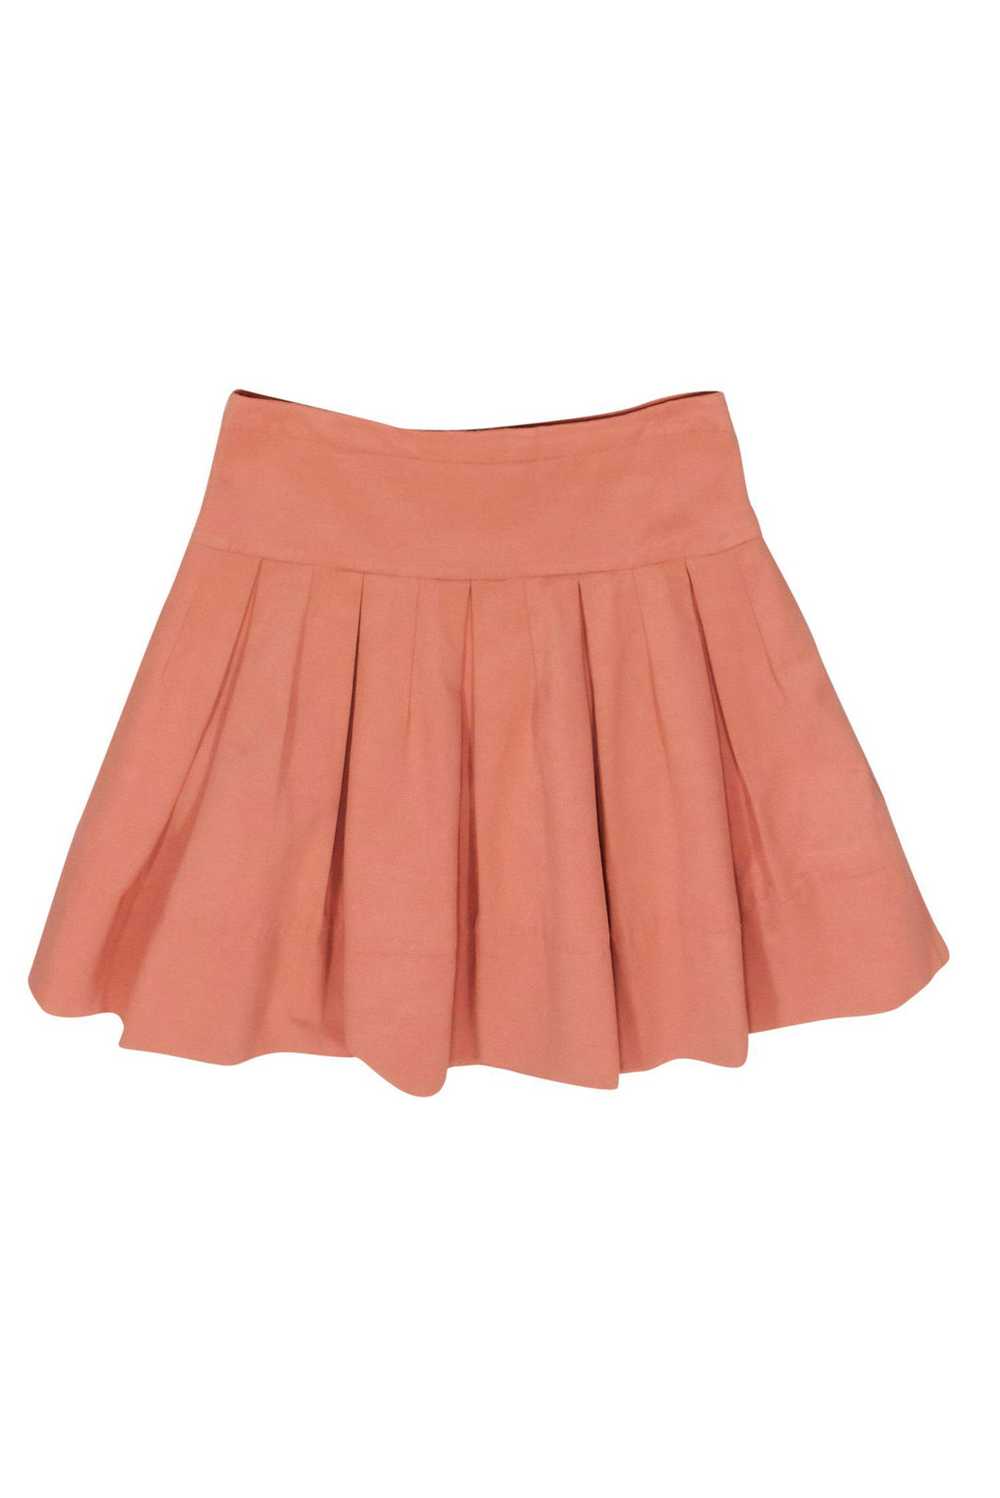 BCBG Max Azria - Peach Pleated Tennis Skirt Sz M - image 1